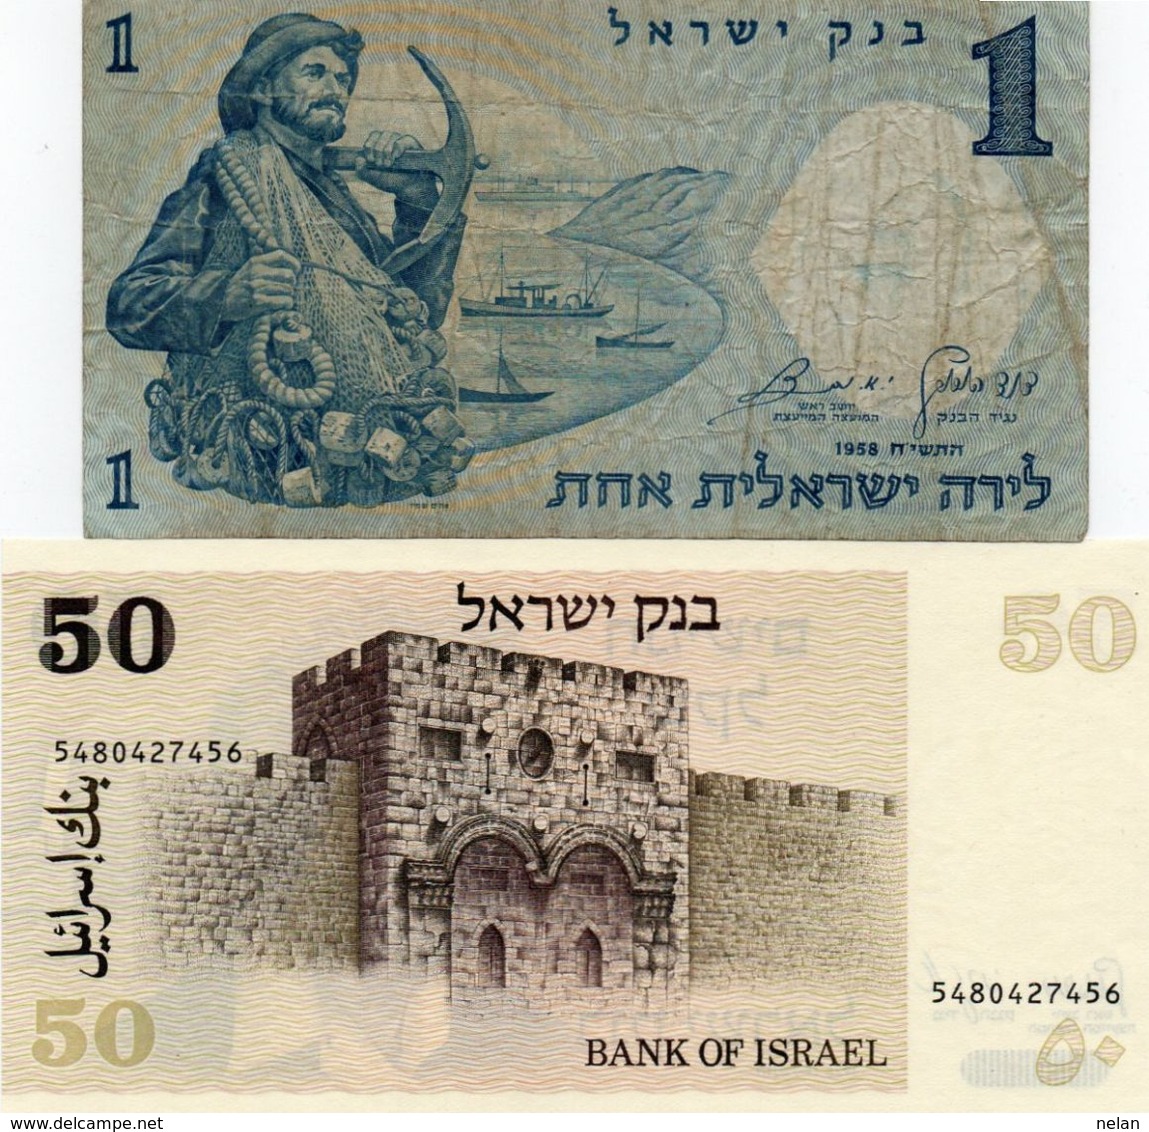 ISRAEL 1 LIRAH  1958  CIRC /50 SHEQALIM 1980 P-46 UNC - Lots & Kiloware - Banknotes